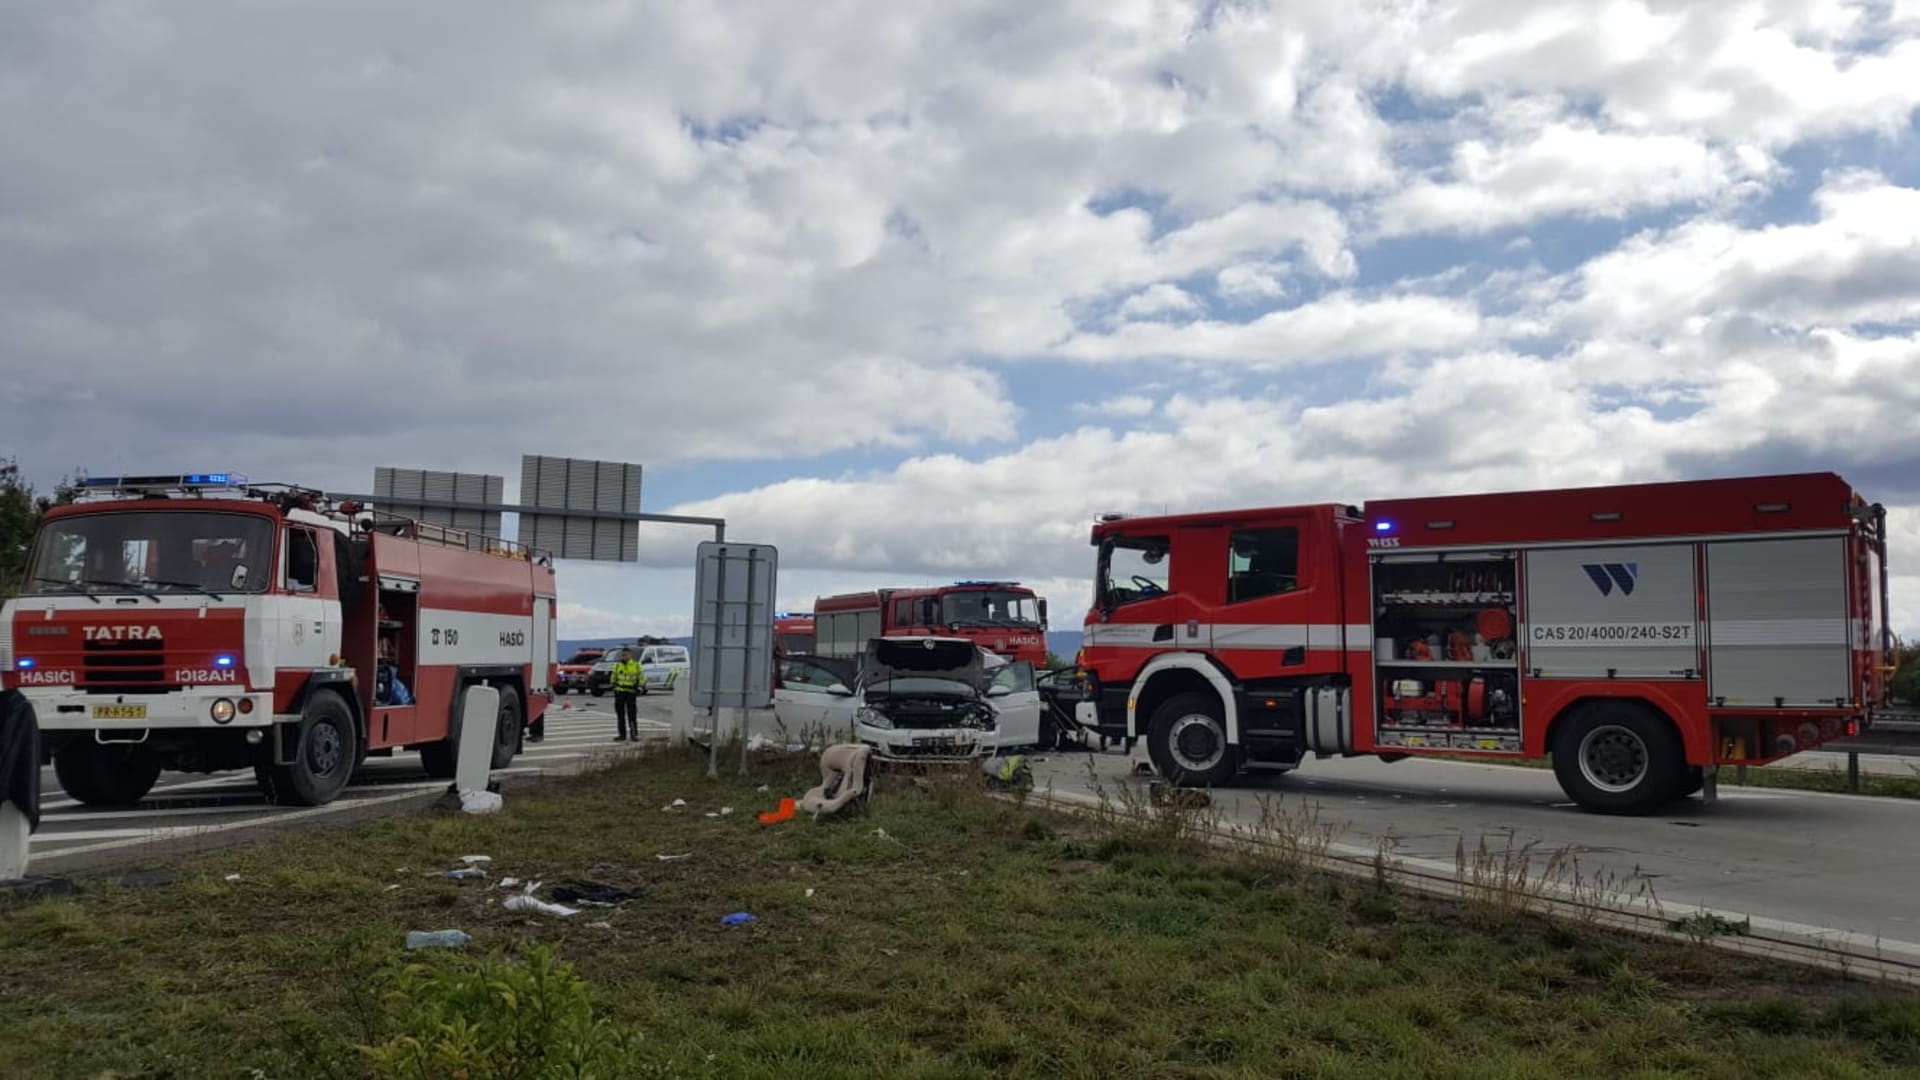 Dálnici D1 zastavila hromadná nehoda čtyř aut (ZDROJ: Twotter.com/Hasiči Olomouc)